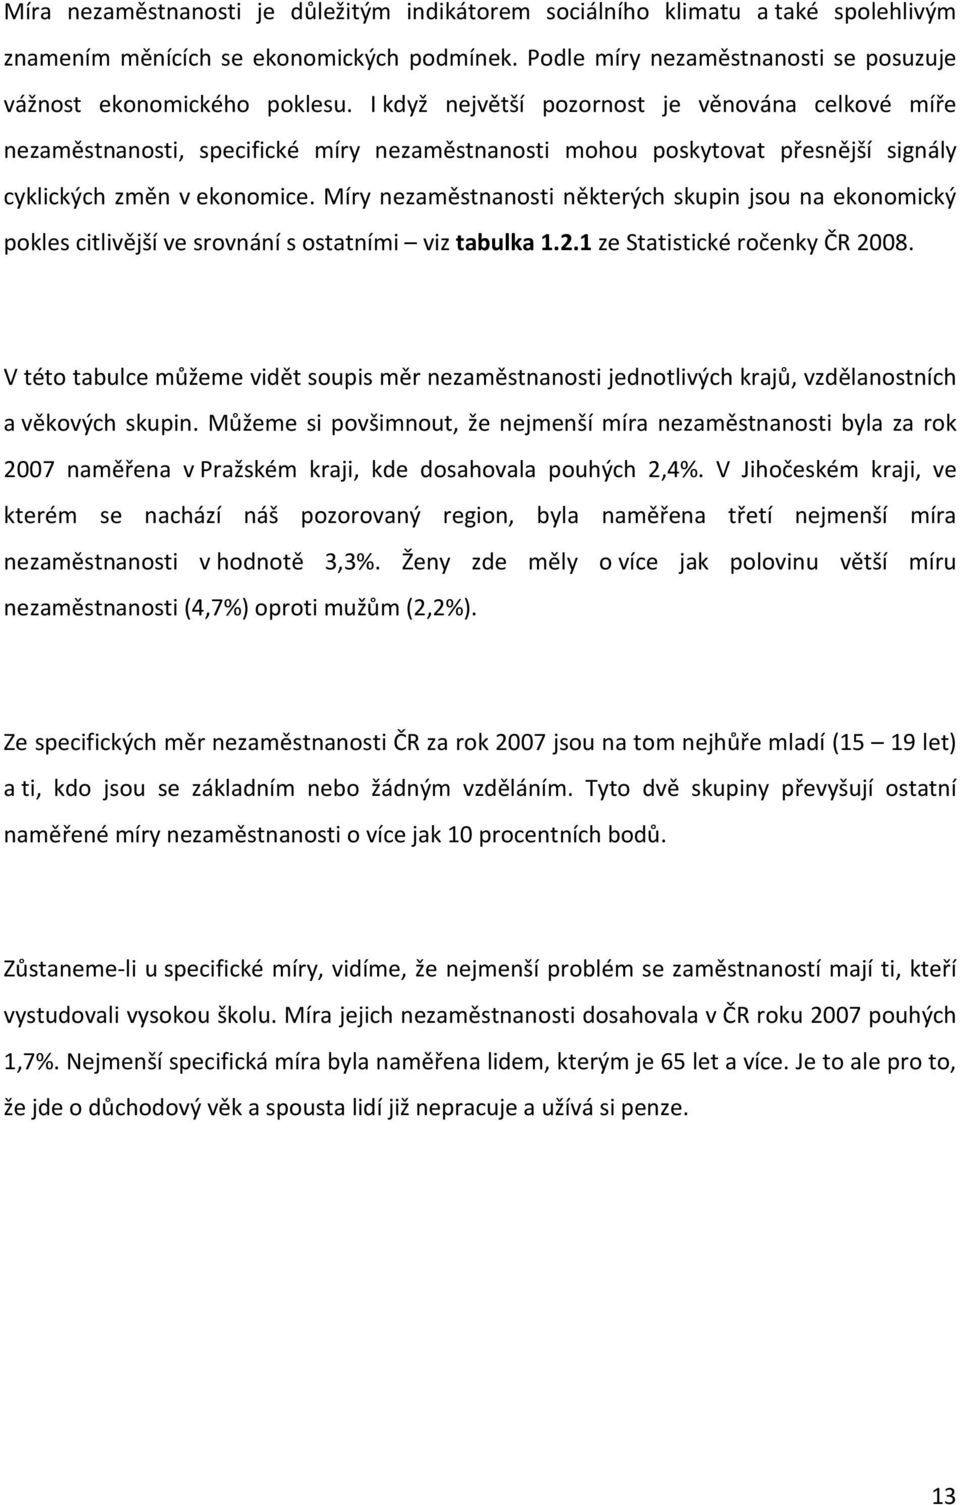 Míry nezaměstnanosti některých skupin jsou na ekonomický pokles citlivější ve srovnání s ostatními viz tabulka 1.2.1 ze Statistické ročenky ČR 2008.